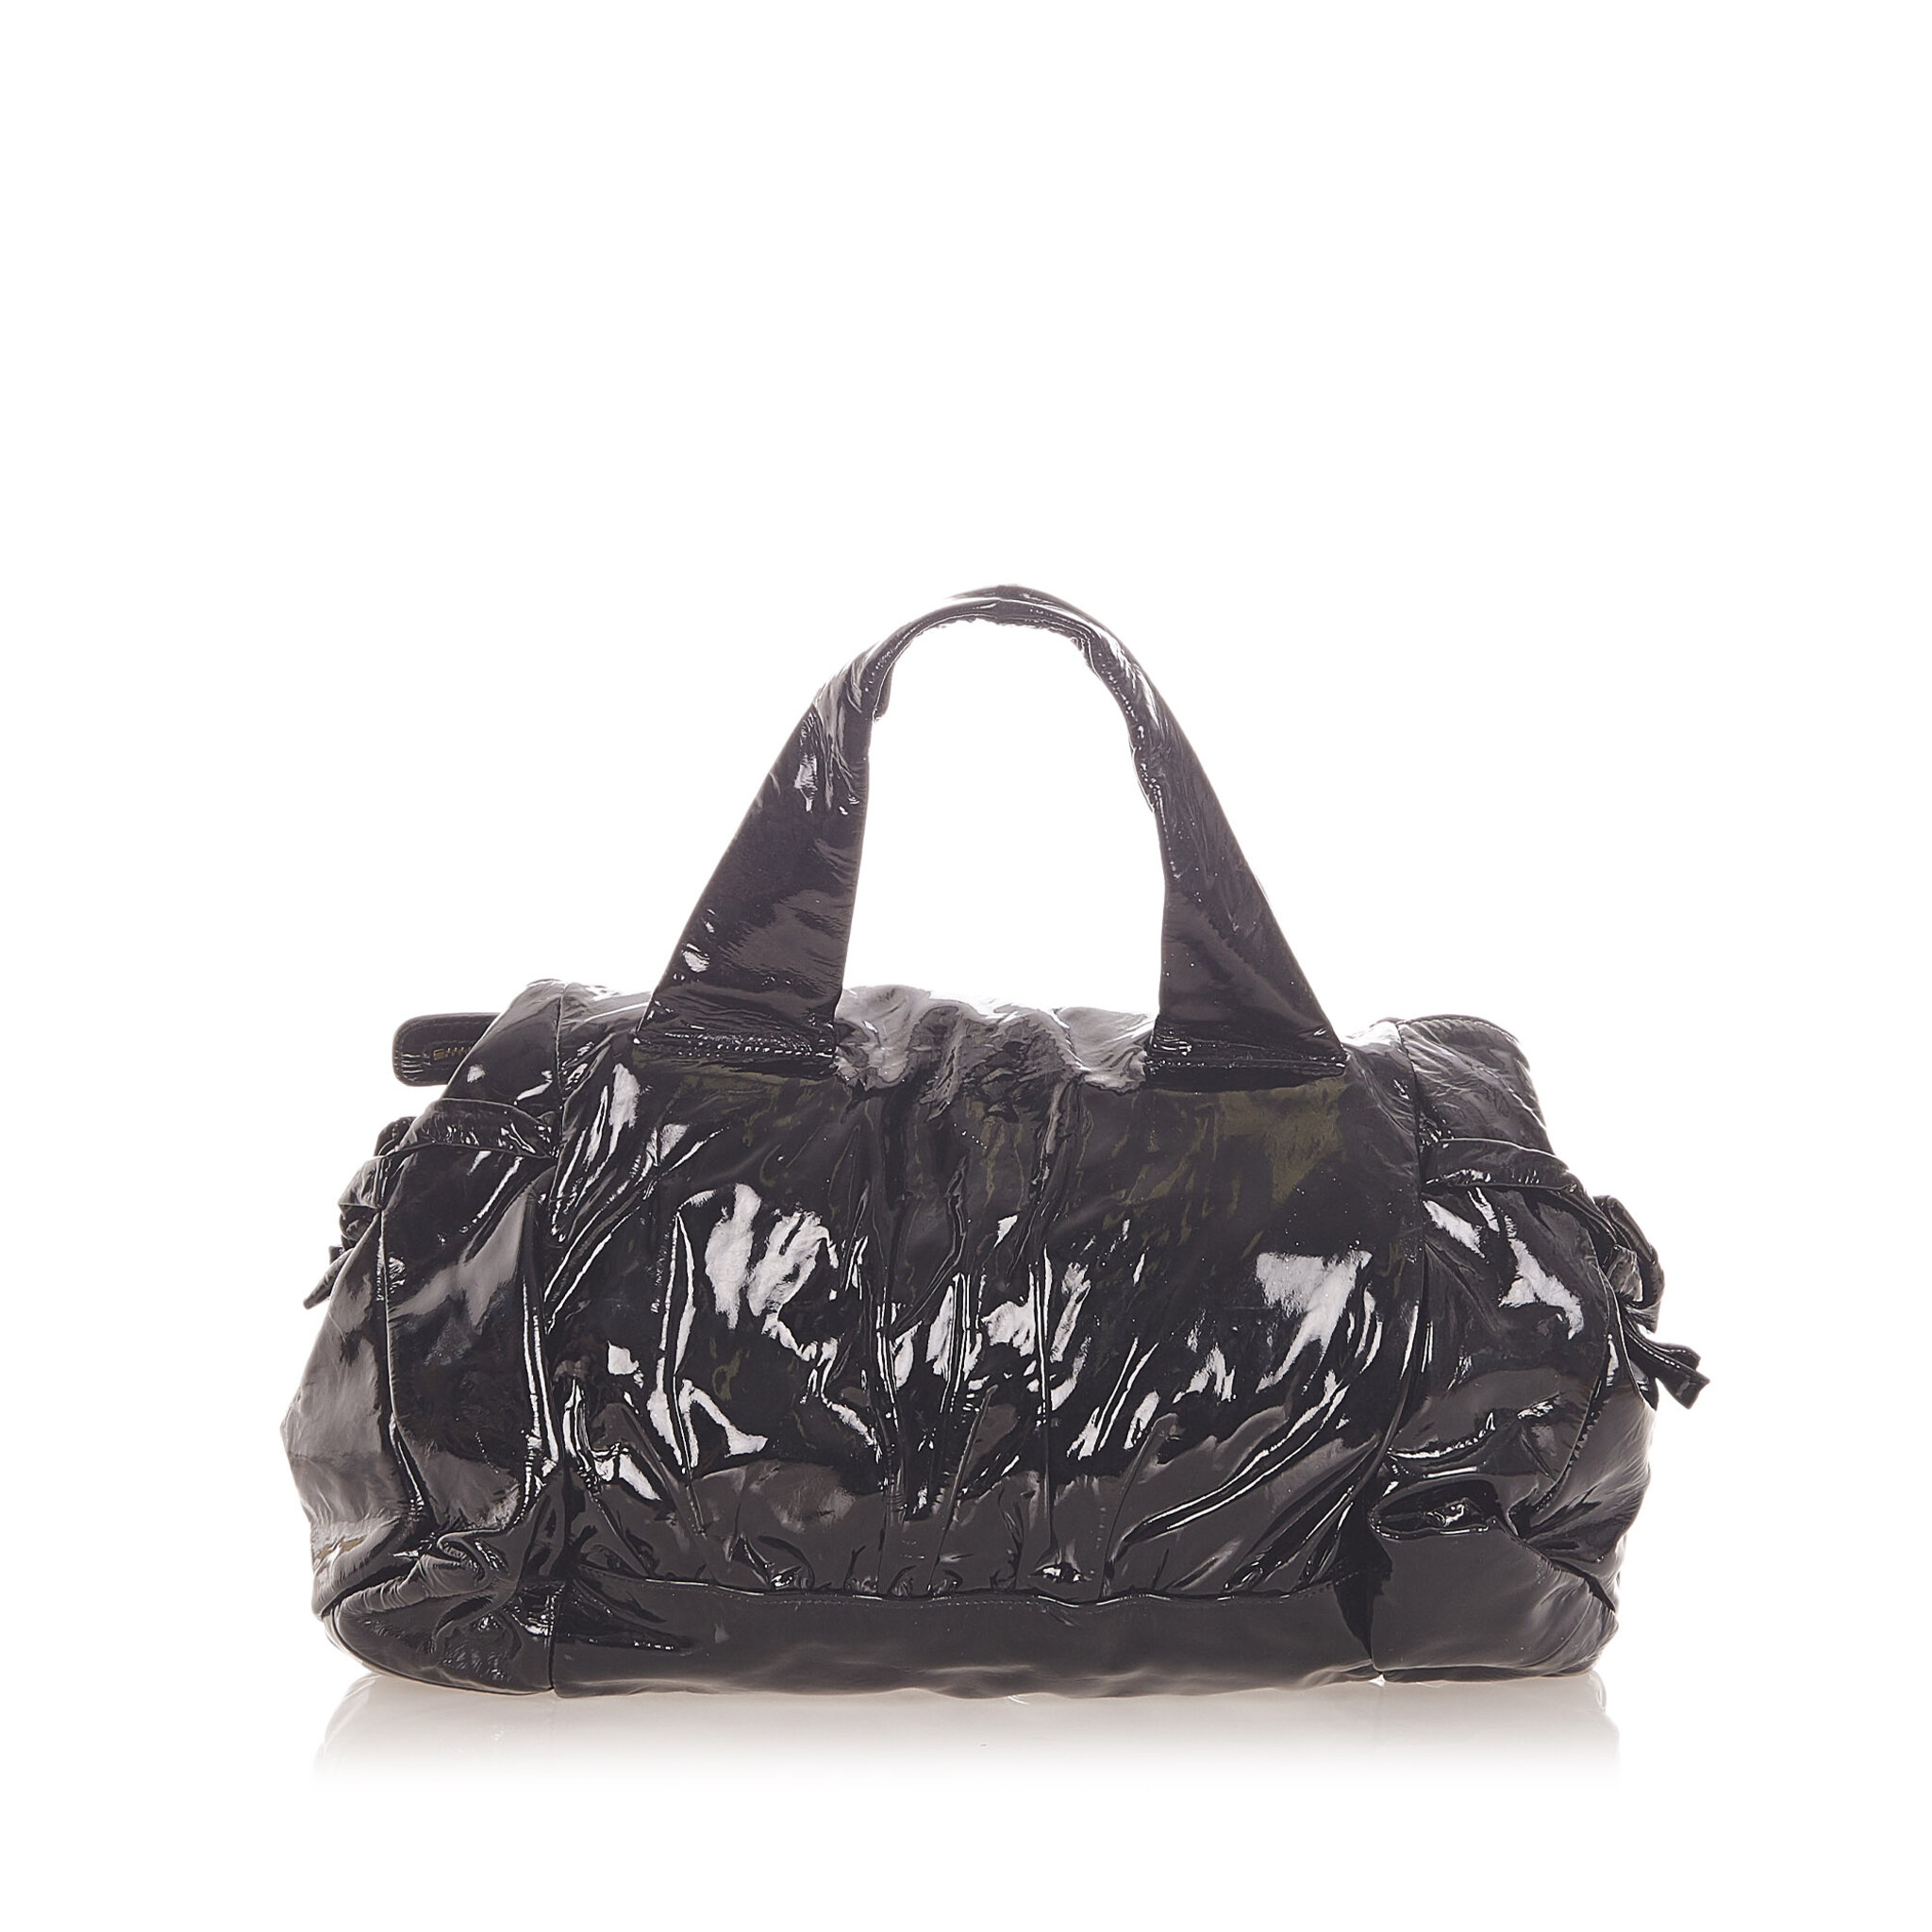 Gucci Hysteria Patent Leather Handbag, black